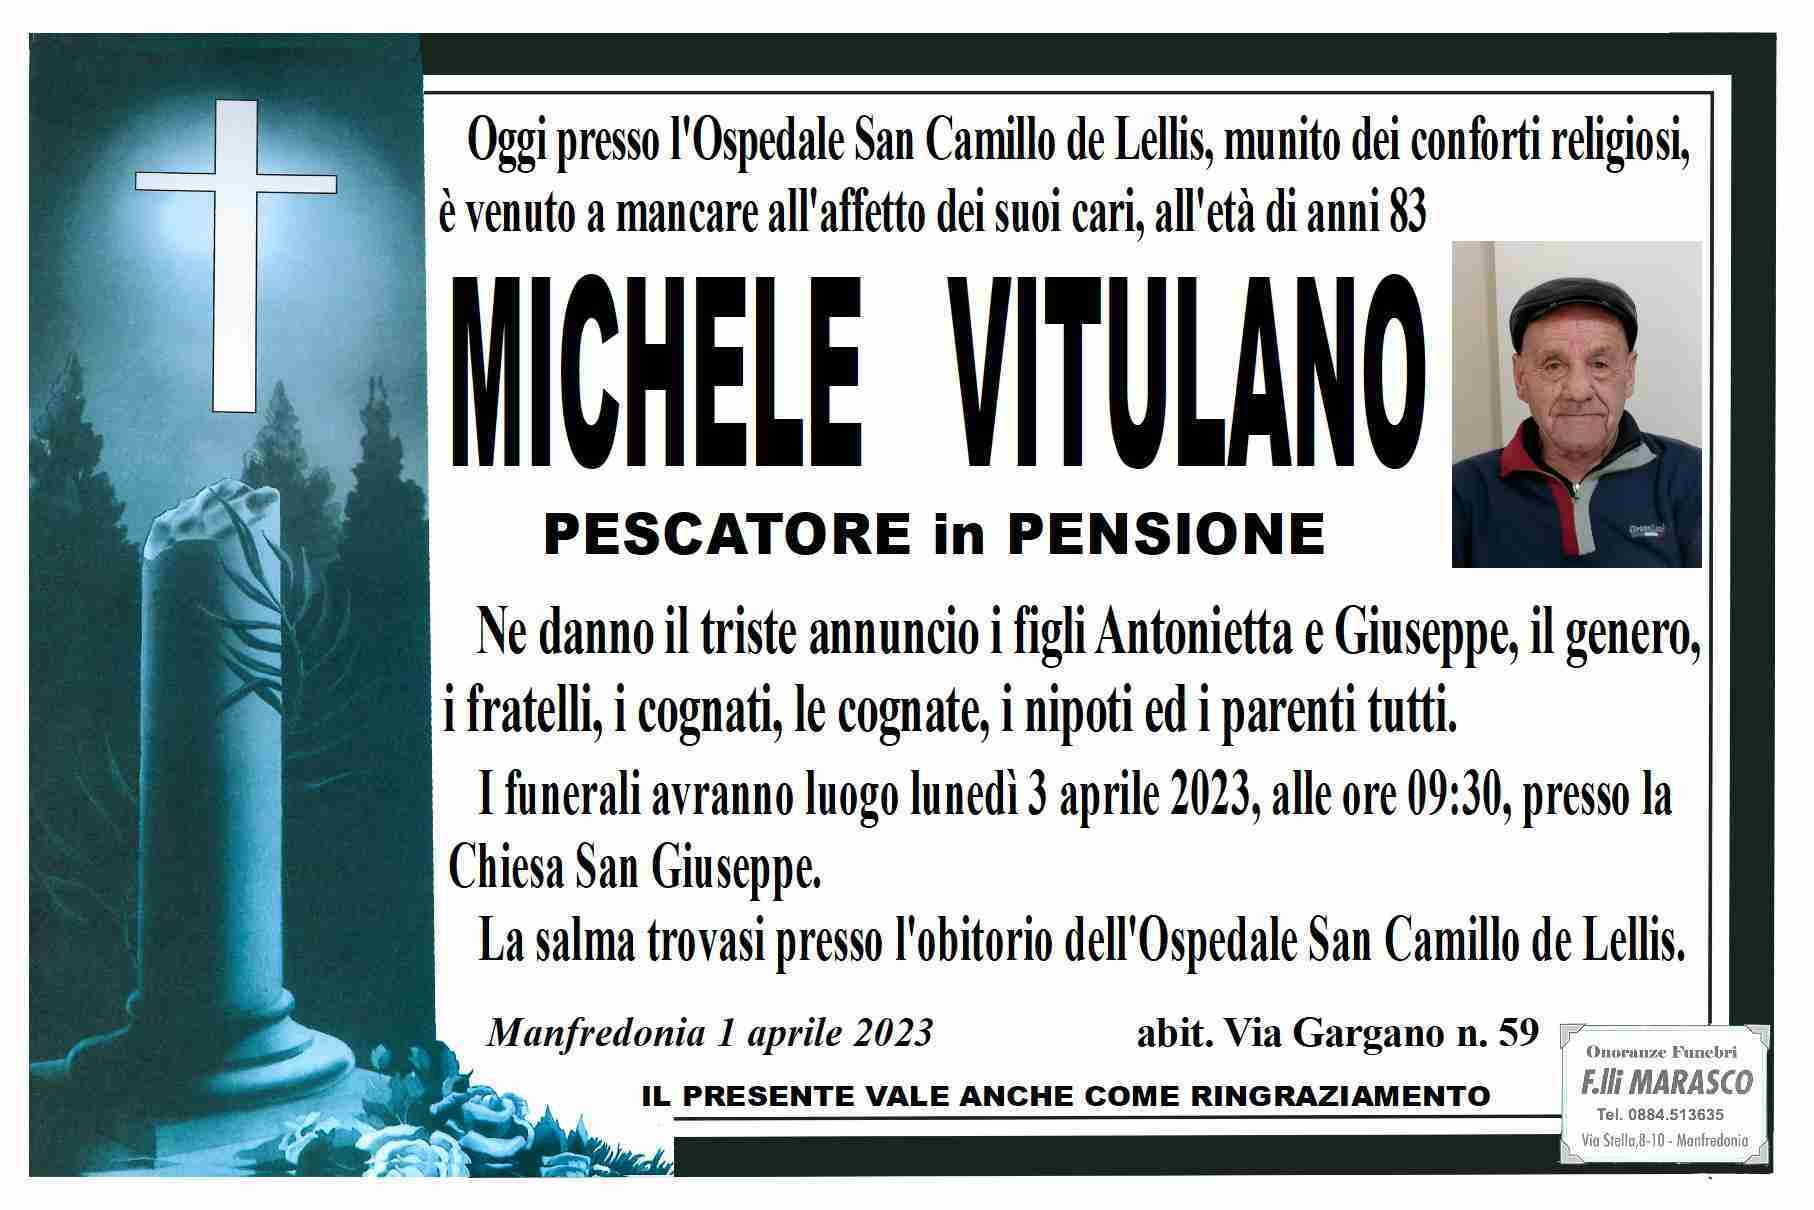 Michele Vitulano